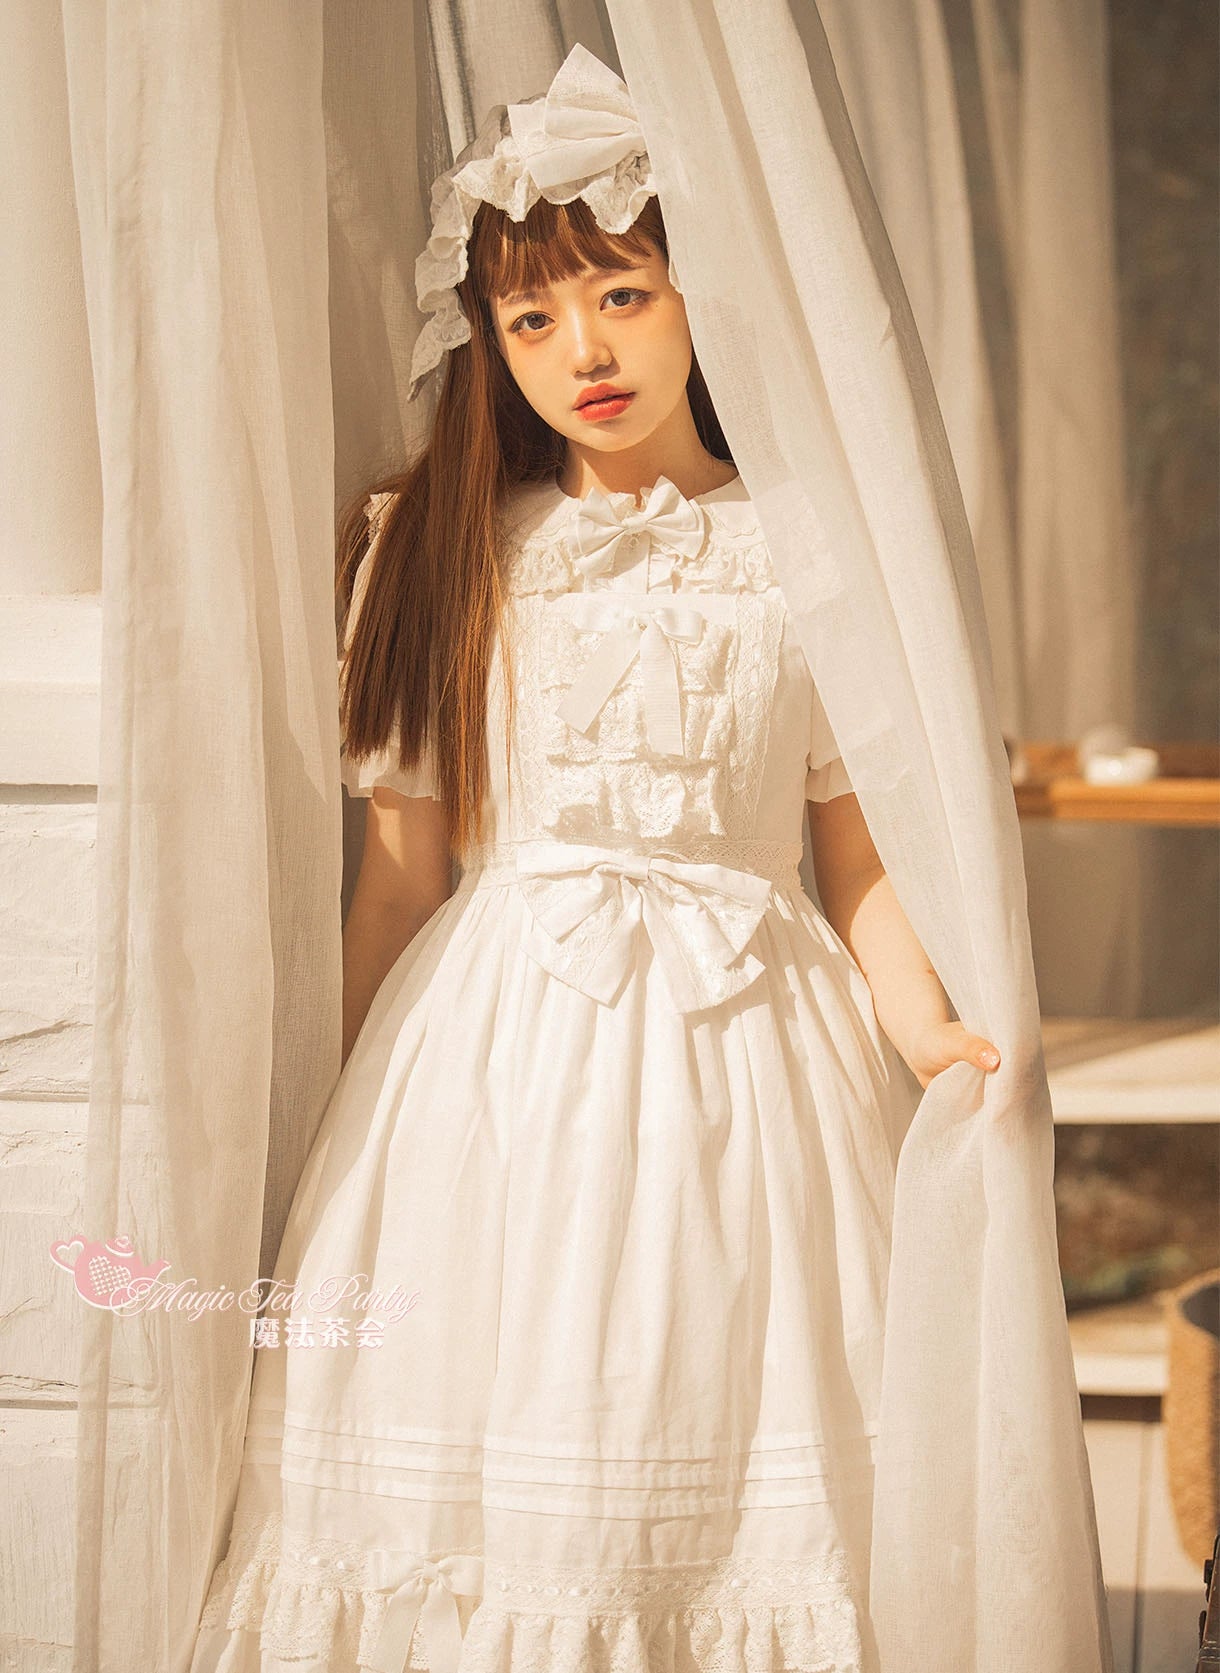 Magic Tea Party~Cute Lolita Jumper Skirt Multicolors JSK   